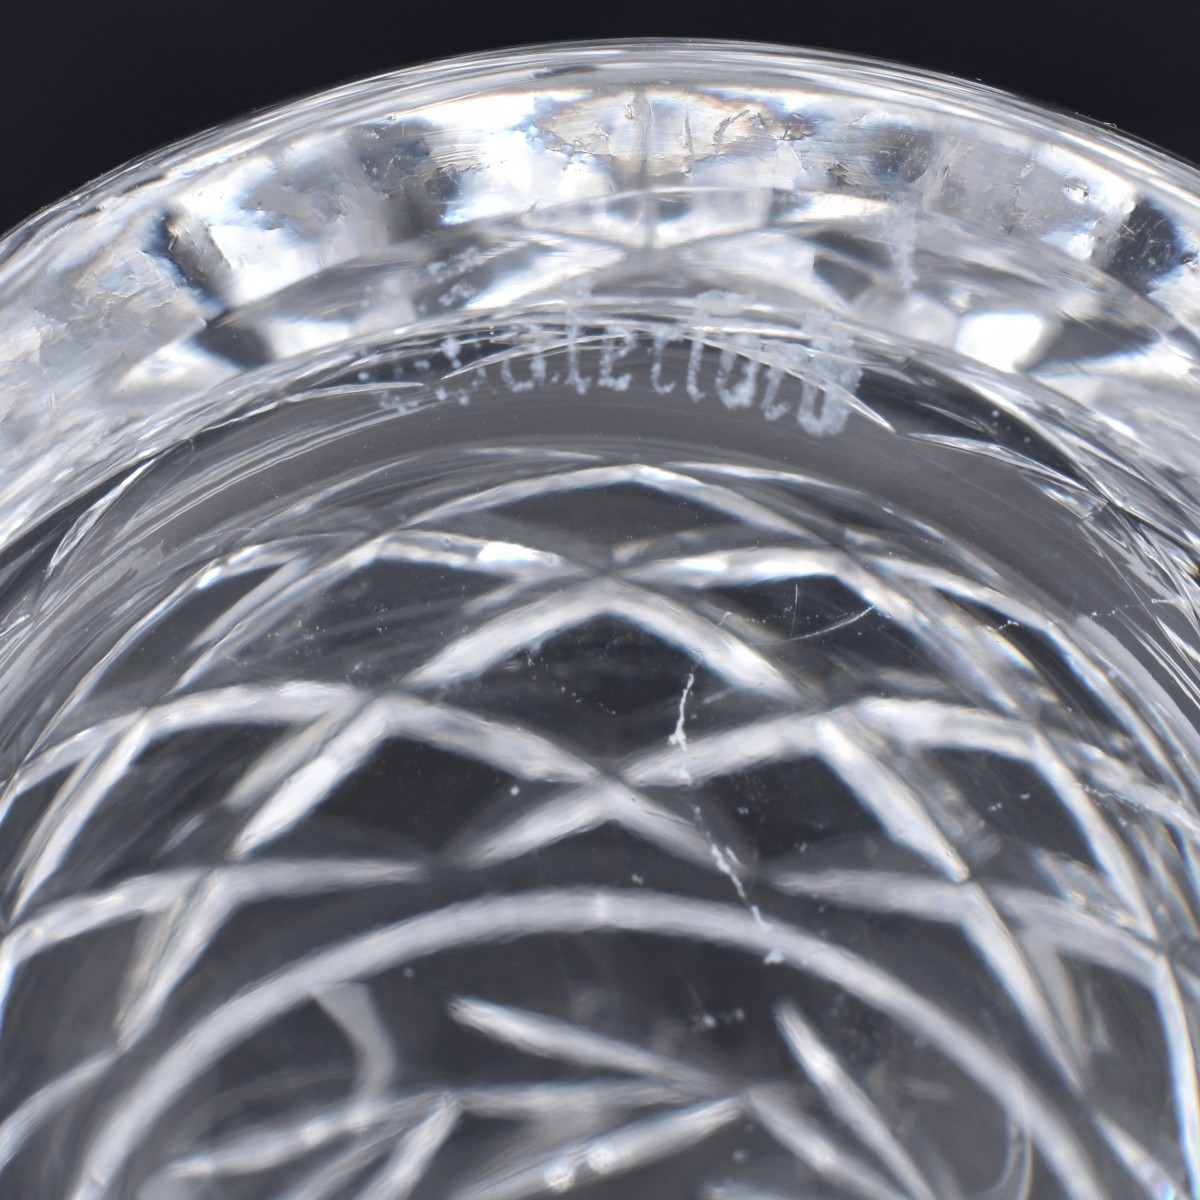 Sixteen Waterford Crystal Tableware